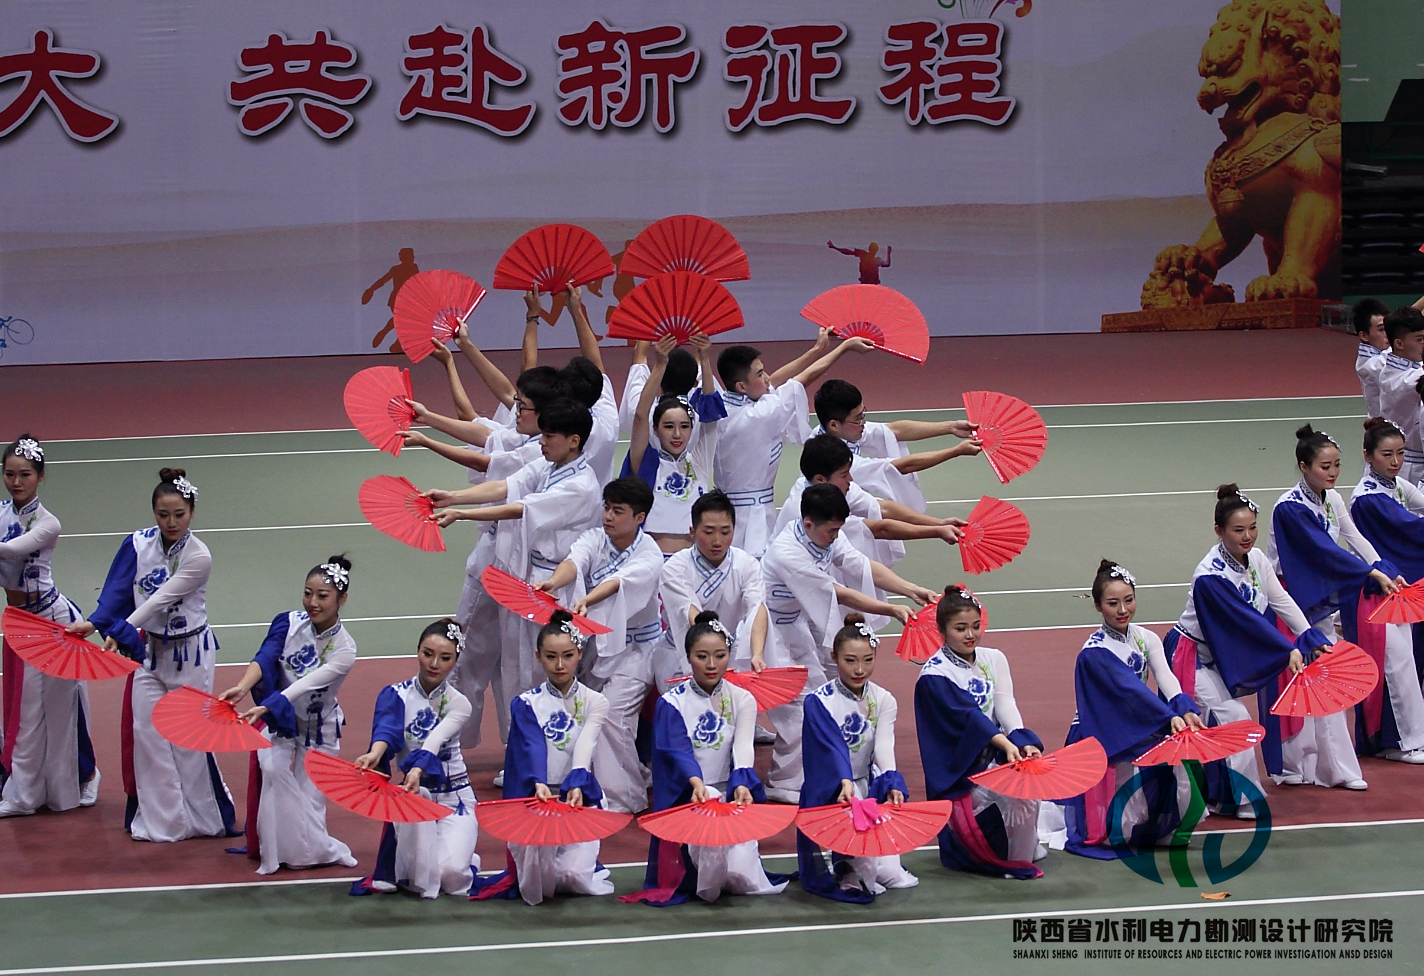 由设计院34名青年职工表演的健身舞蹈《风韵中国—响扇舞